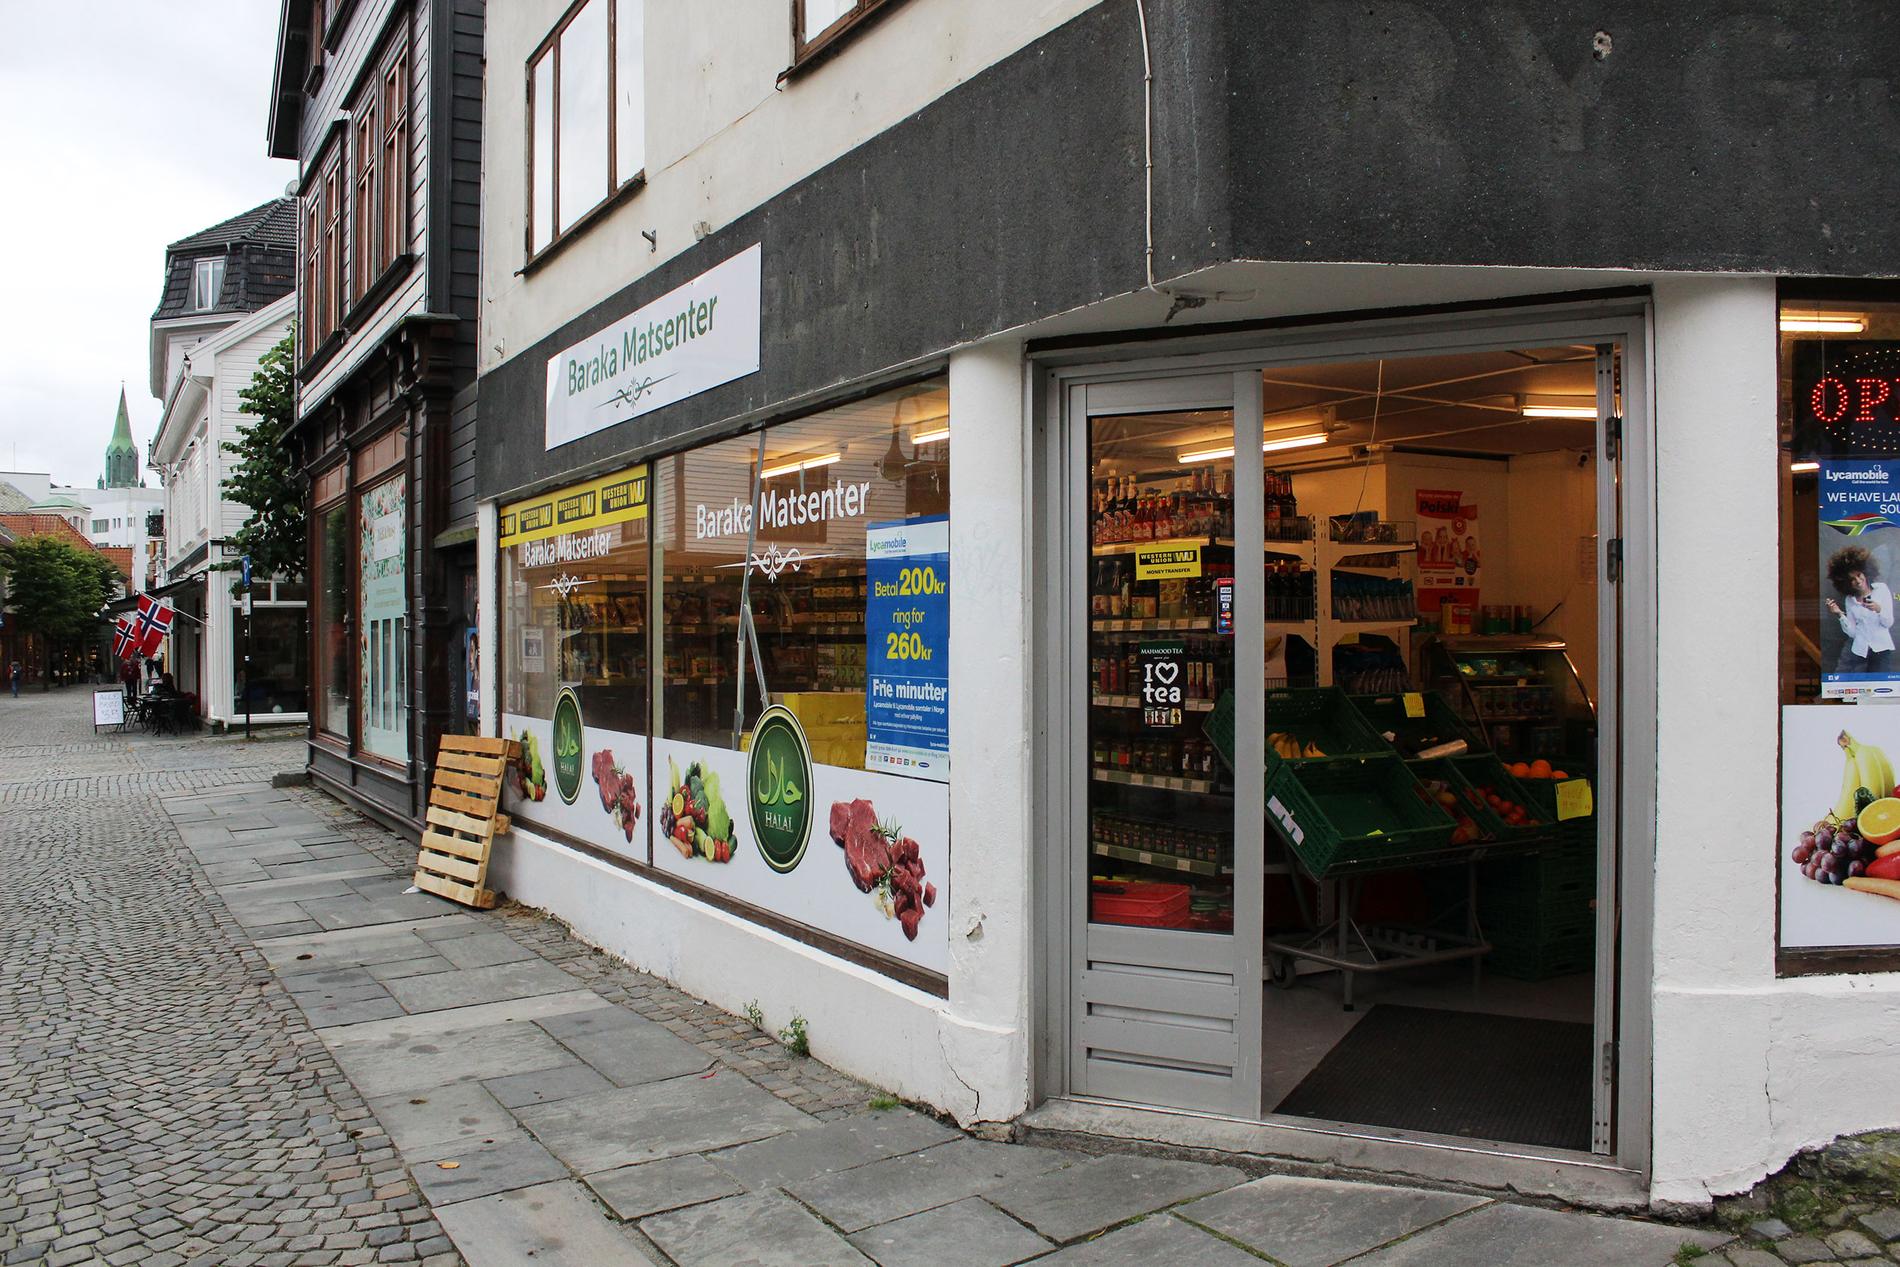  Baraka Matsenter tilbyr, som flere andre utenlandske dagligvarebutikker, varer som også finnes hos større norske dagligvarekjeder. Likevel er det flere kunder som prøver å forhandle ned prisen. 